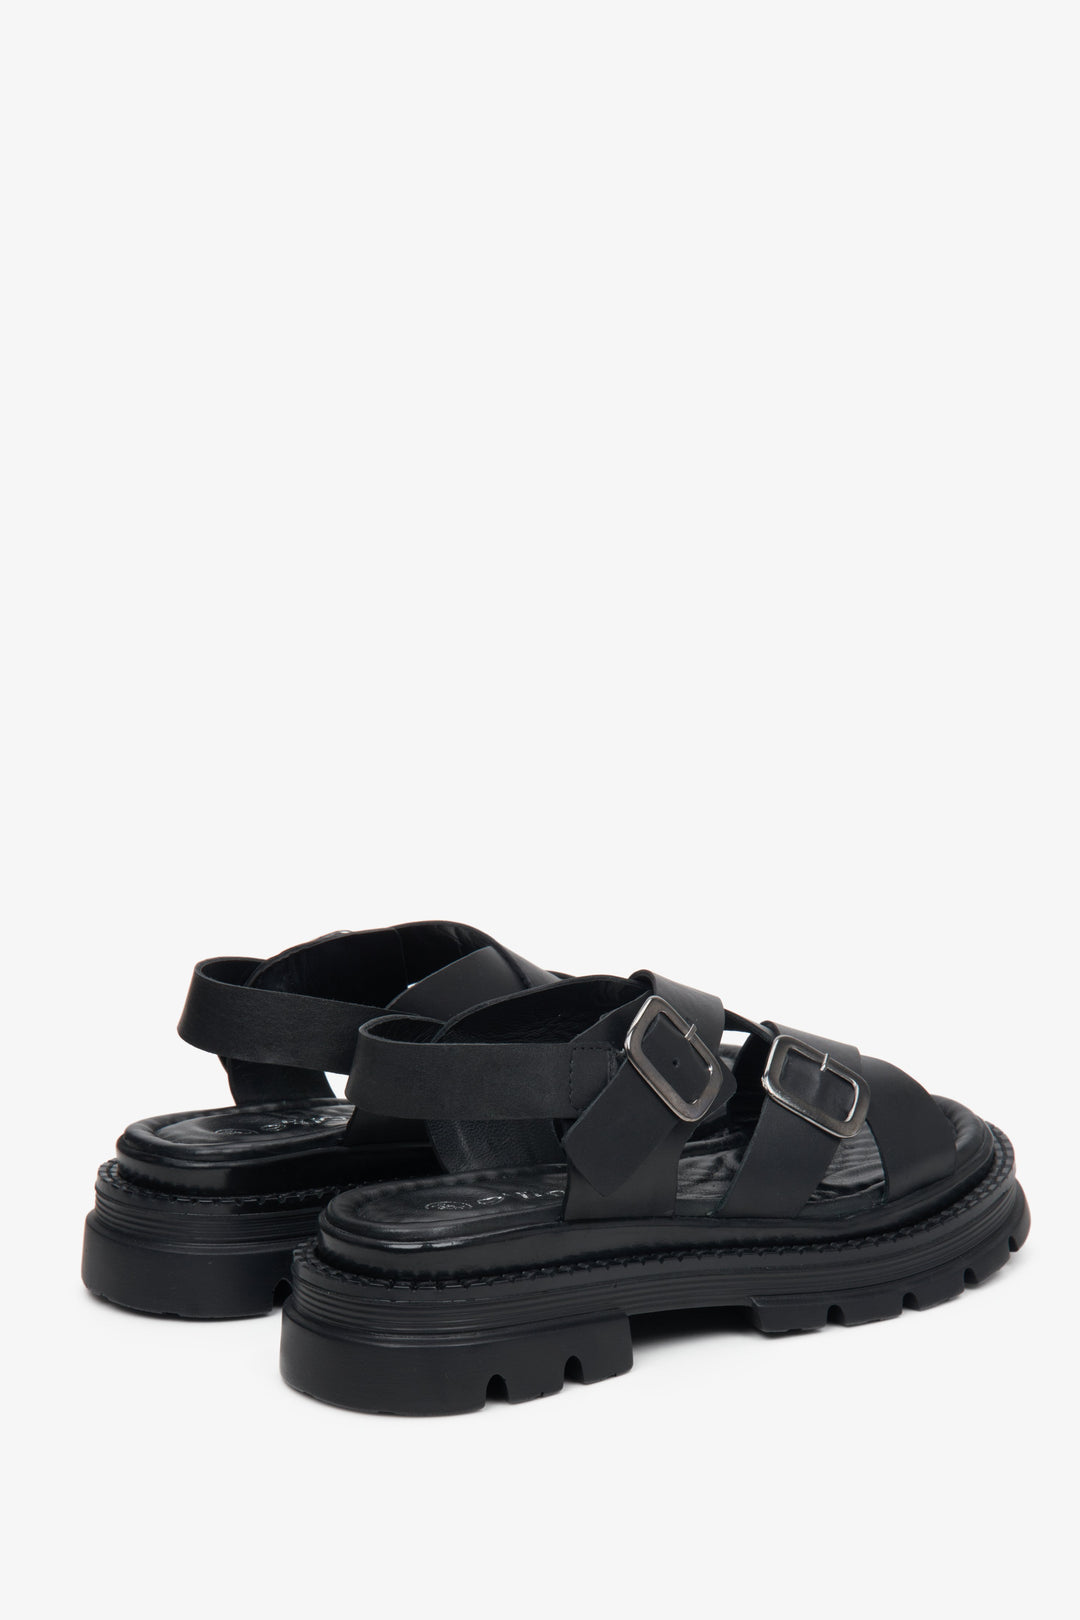 Damskie, czarne sandały ze skóry naturalnej licowej Estro - zbliżenie na linię boczną i tył obuwia.